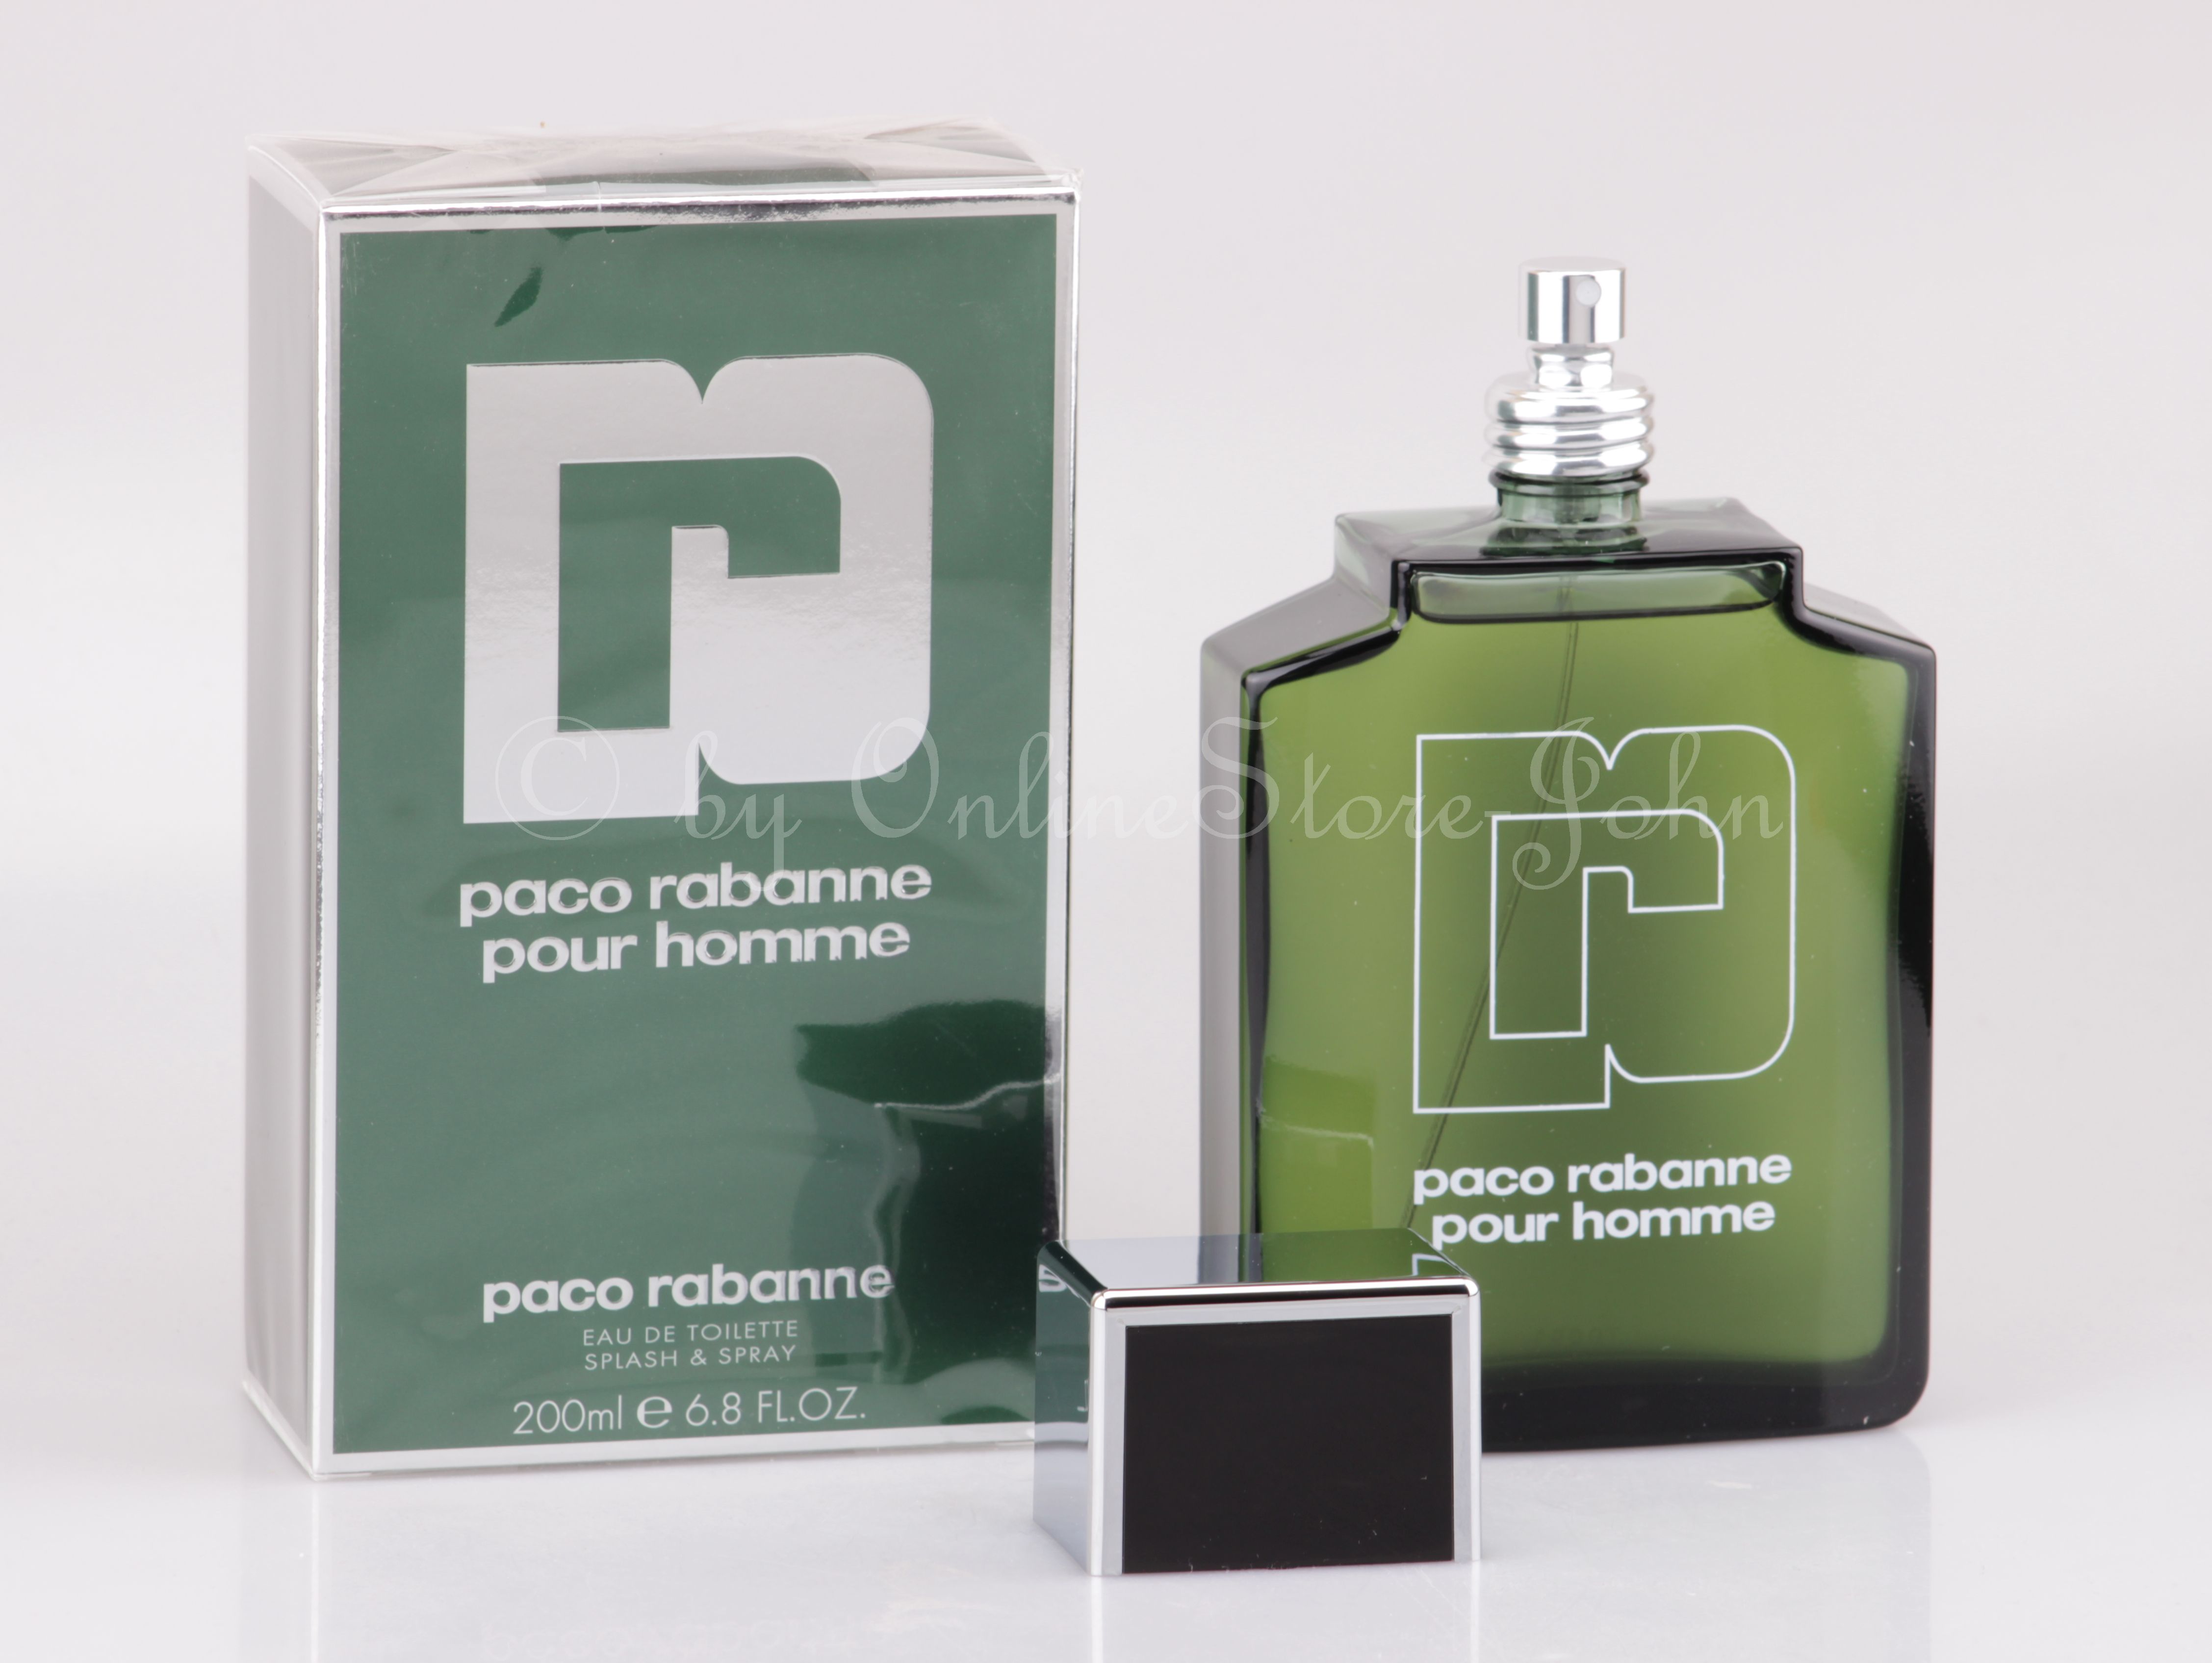 Paco Rabanne - pour Homme - 200ml EDT Eau de Toilette Splash & Spray ...